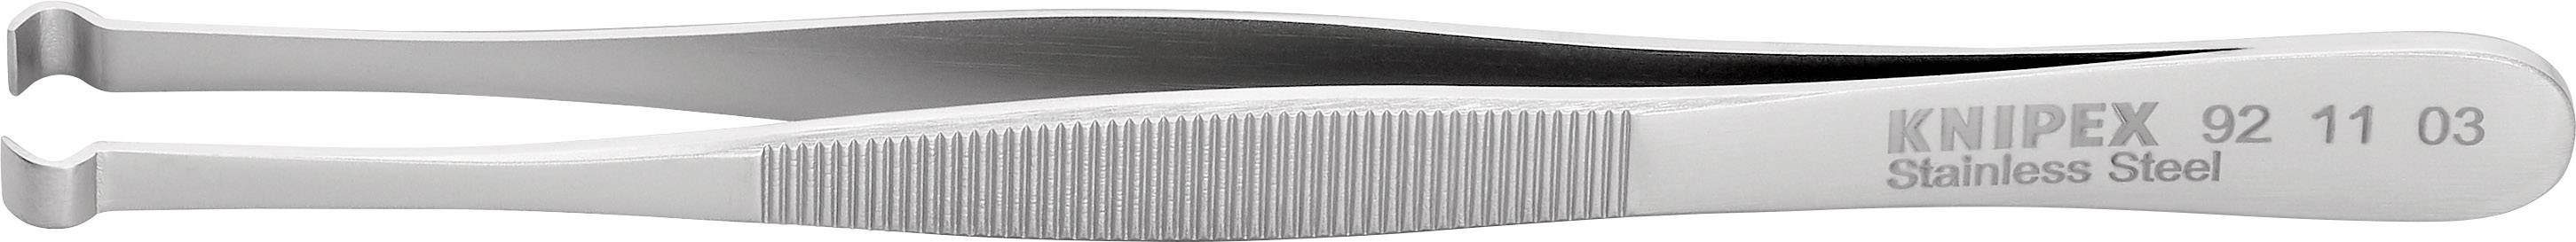 KNIPEX 92 11 03 Positionierpinzette 1 Stück Stumpf 122 mm